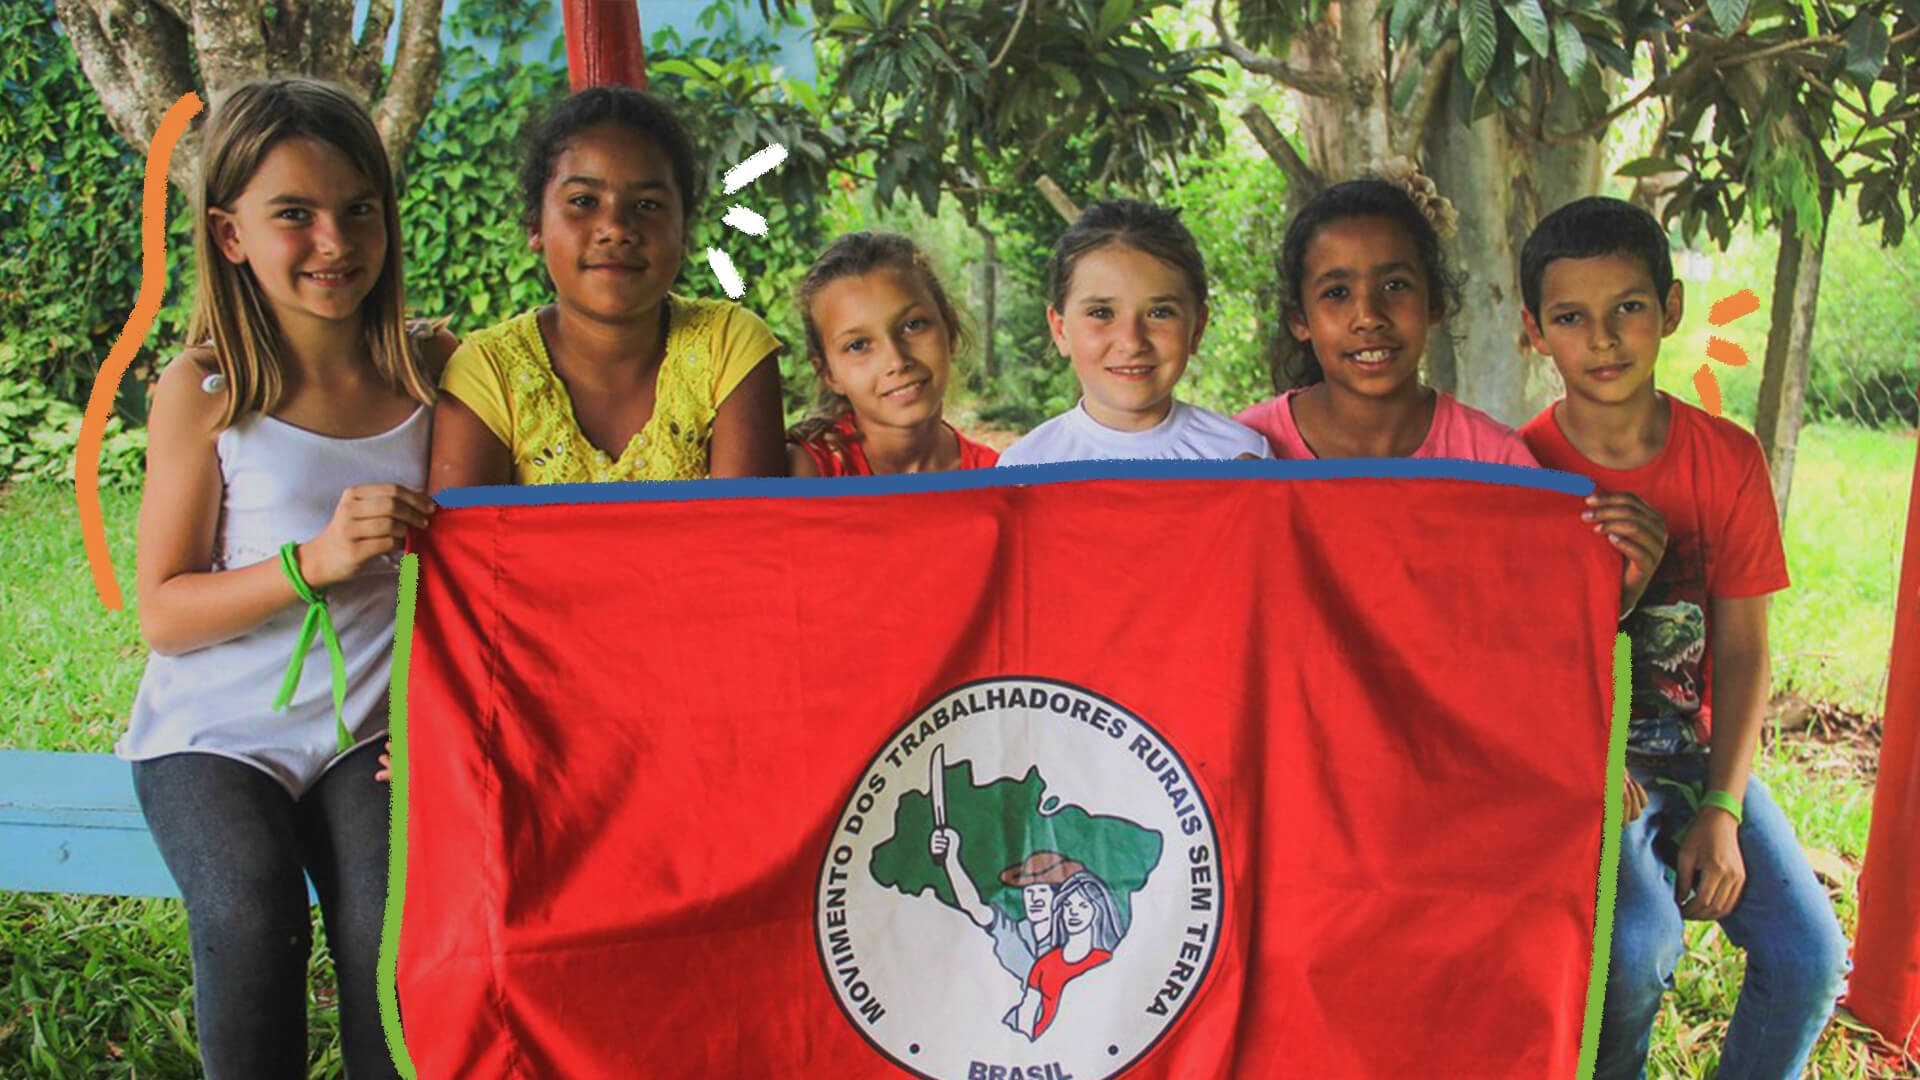 Na foto, crianças seguram uma bandeira do Movimento dos Trabalhadores Rurais Sem Terra (MST).